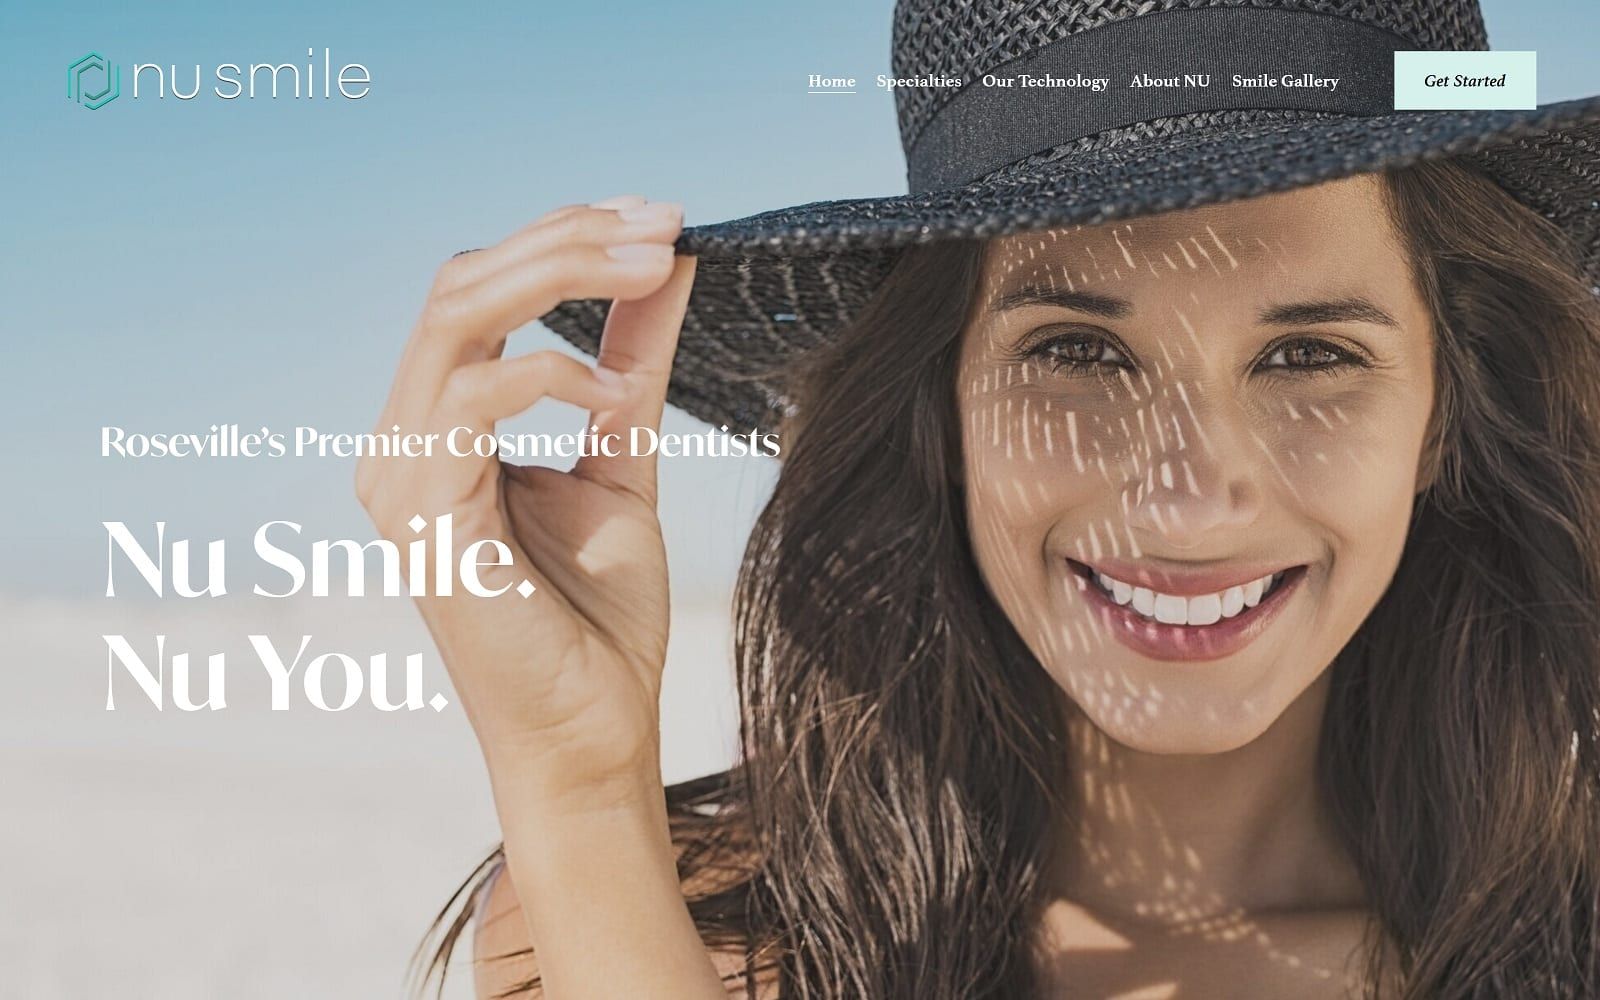 The screenshot of nu smile center for aesthetic & restorative dentistry wemakerosevillesmile. Com website